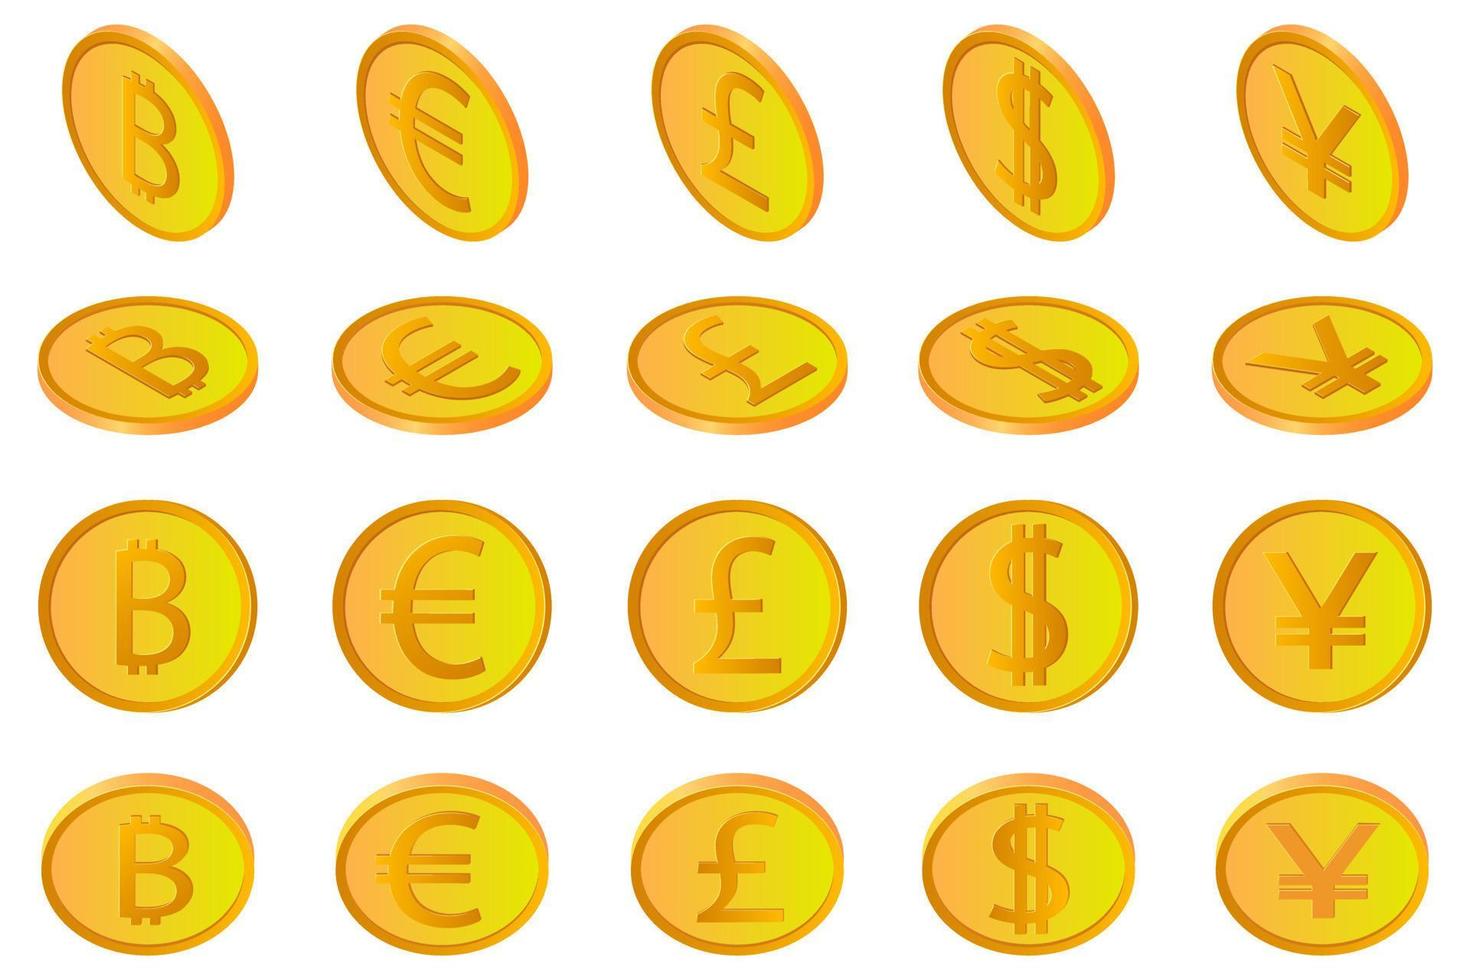 der bitcoin dollar euro pfund und yen.ein satz von münzen amerikanischer europäischer kryptowährungen britischer und japanischer münzen in verschiedenen winkeln isoliert auf weißem hintergrund. als Gestaltungselemente verwenden. vektor